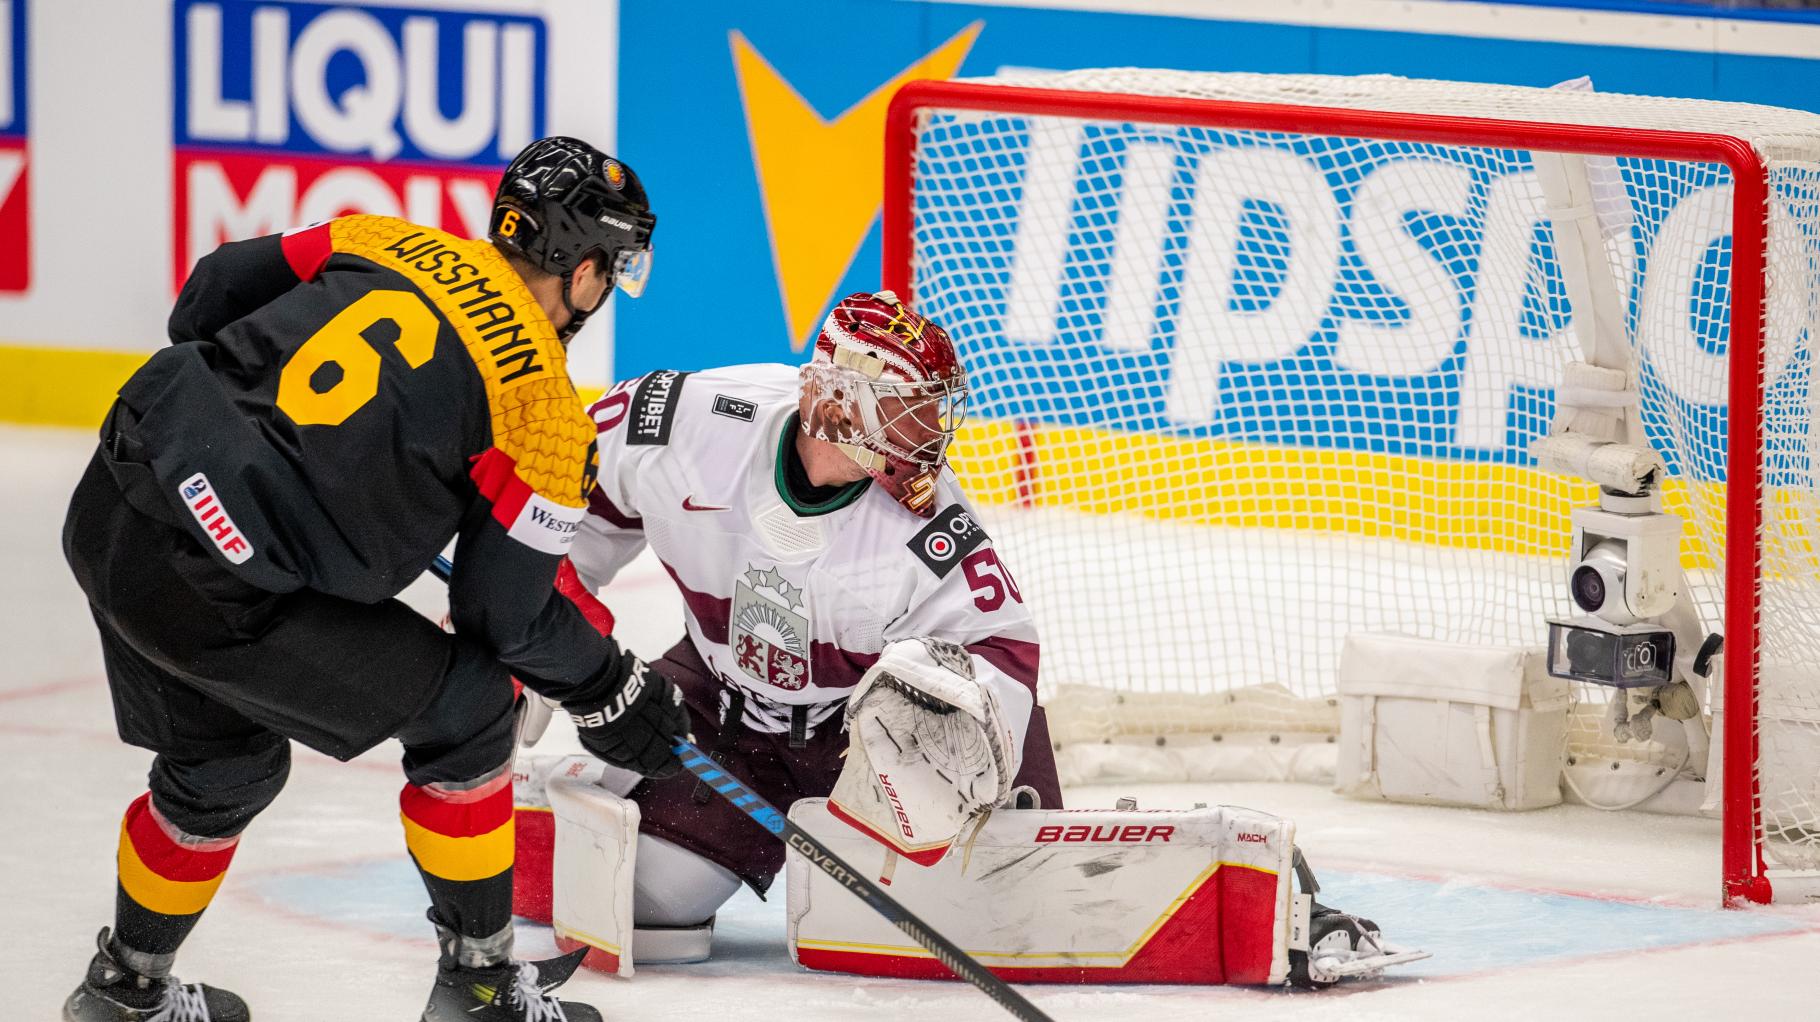 Rekordsieg bei der Eishockey-WM: Deutschland schießt Lettland vom Eis